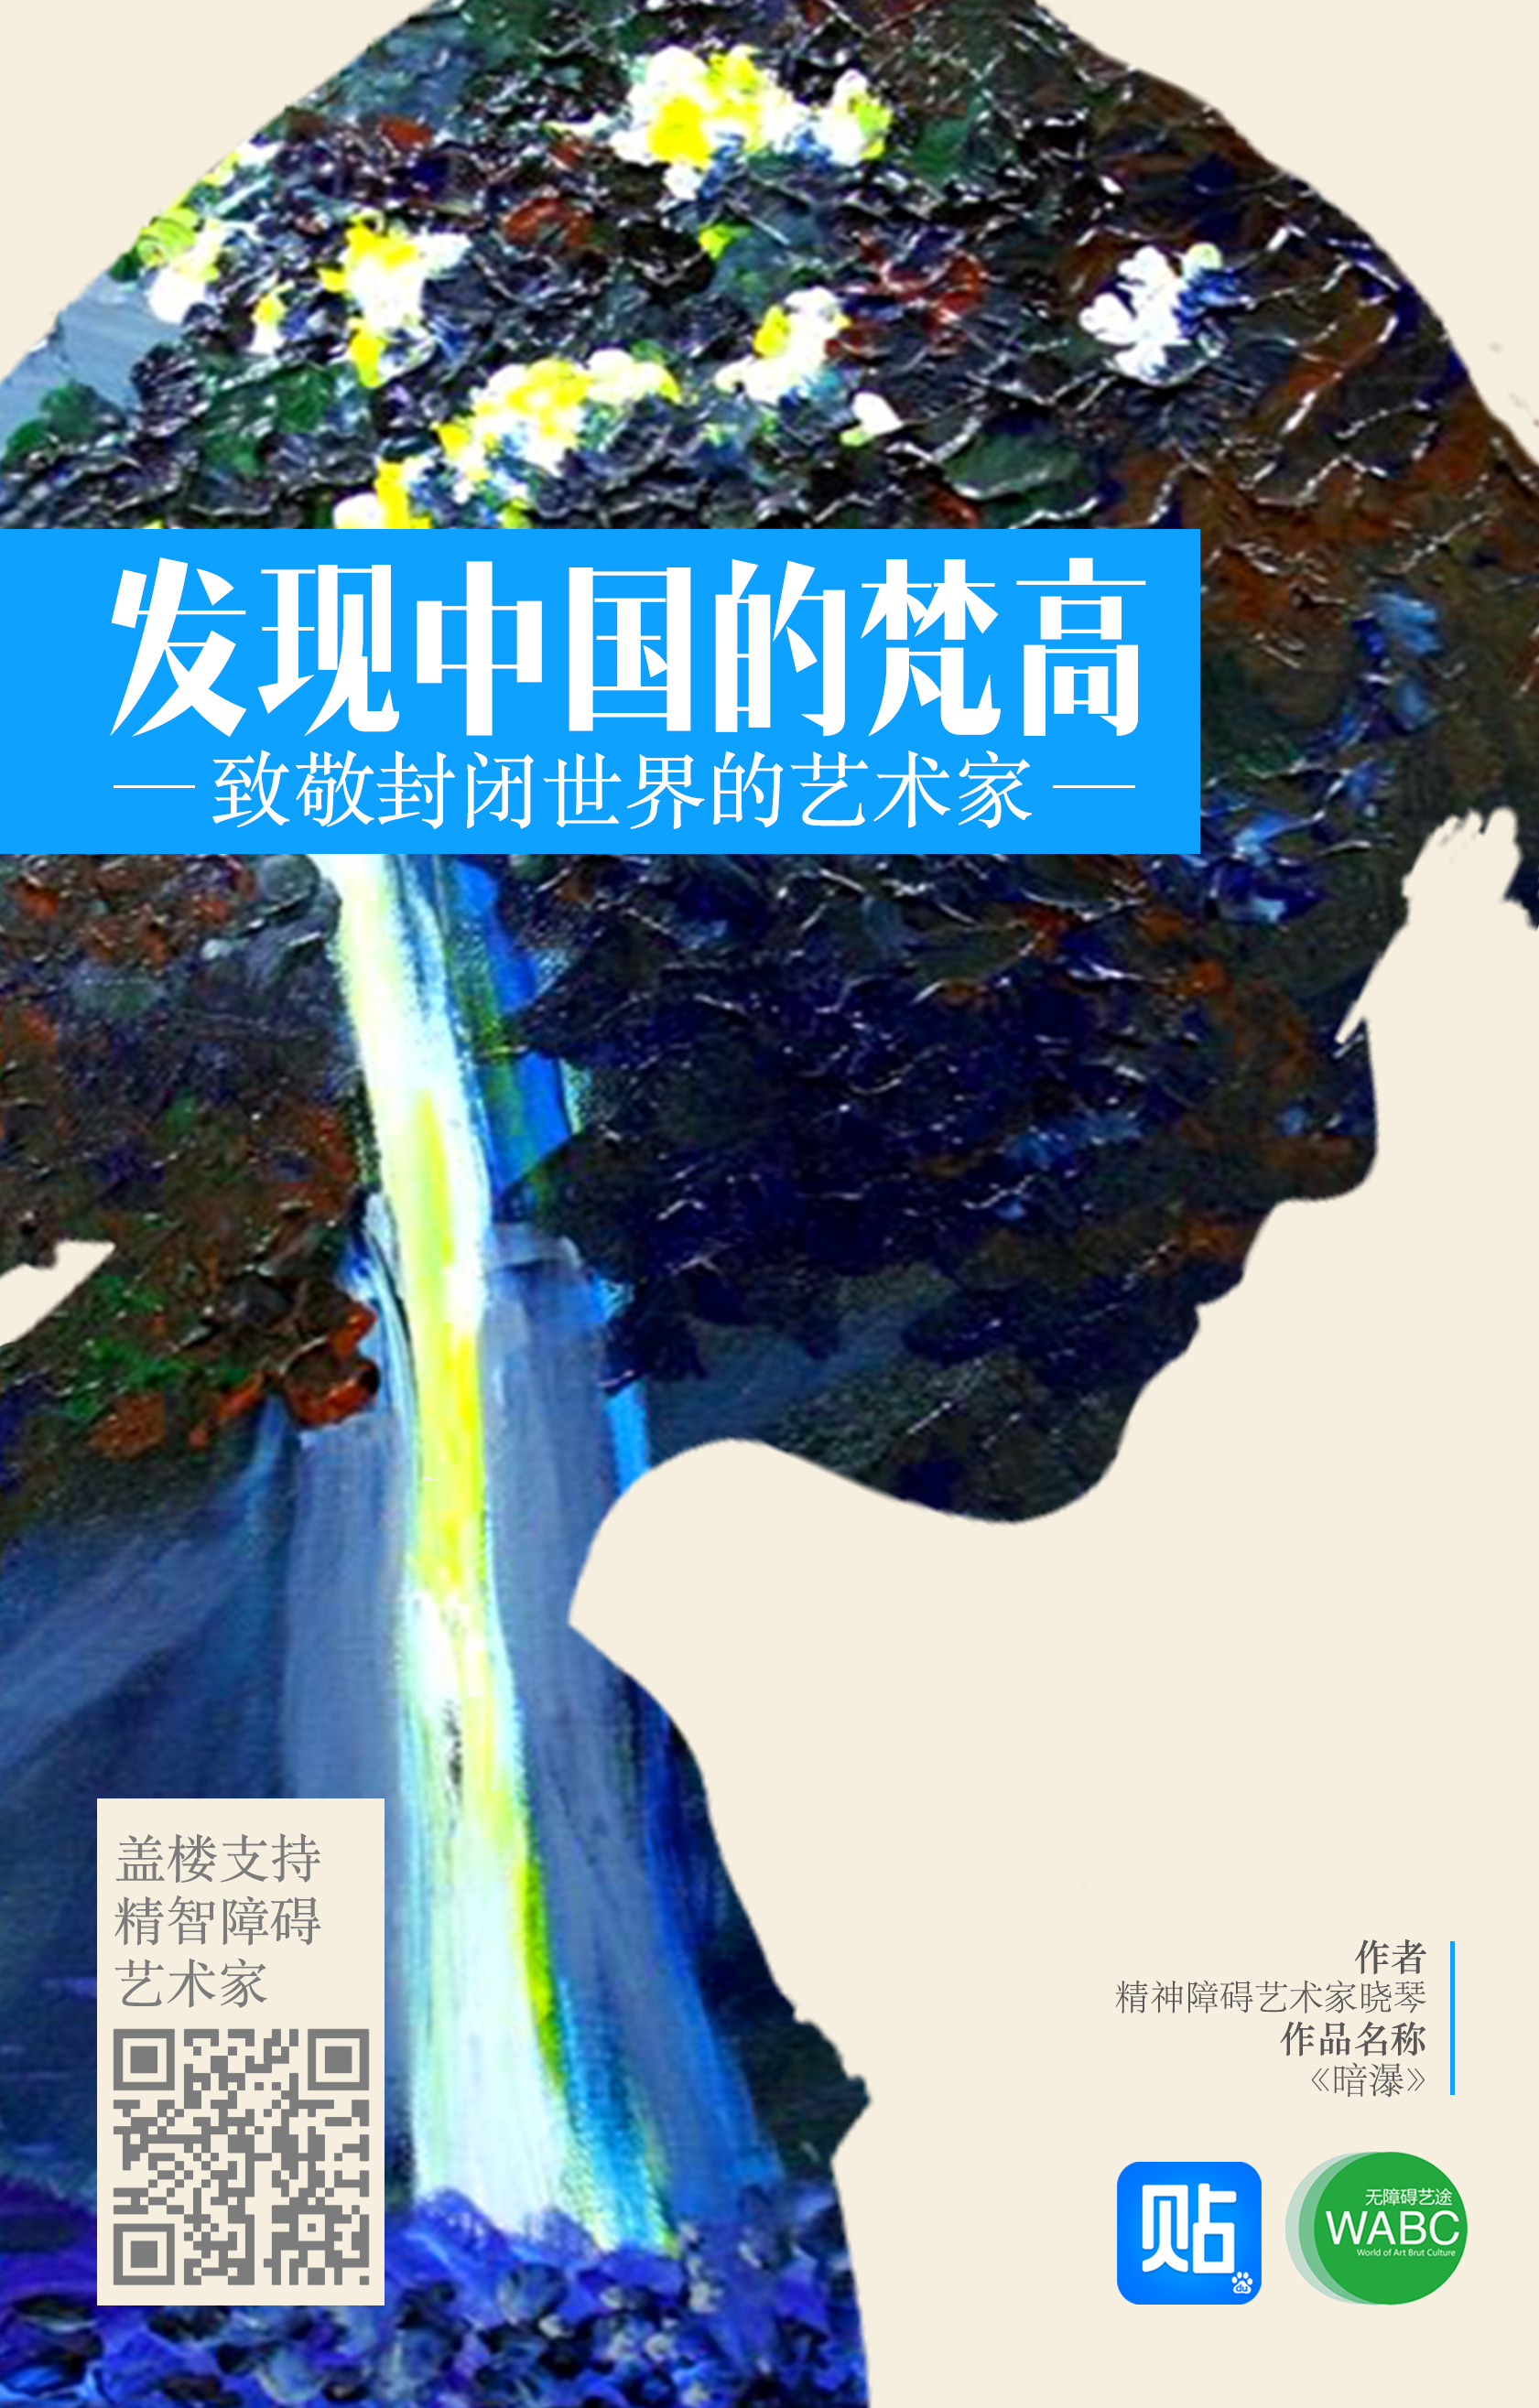 寻找中国的梵高-百度贴吧公益画展2.jpg